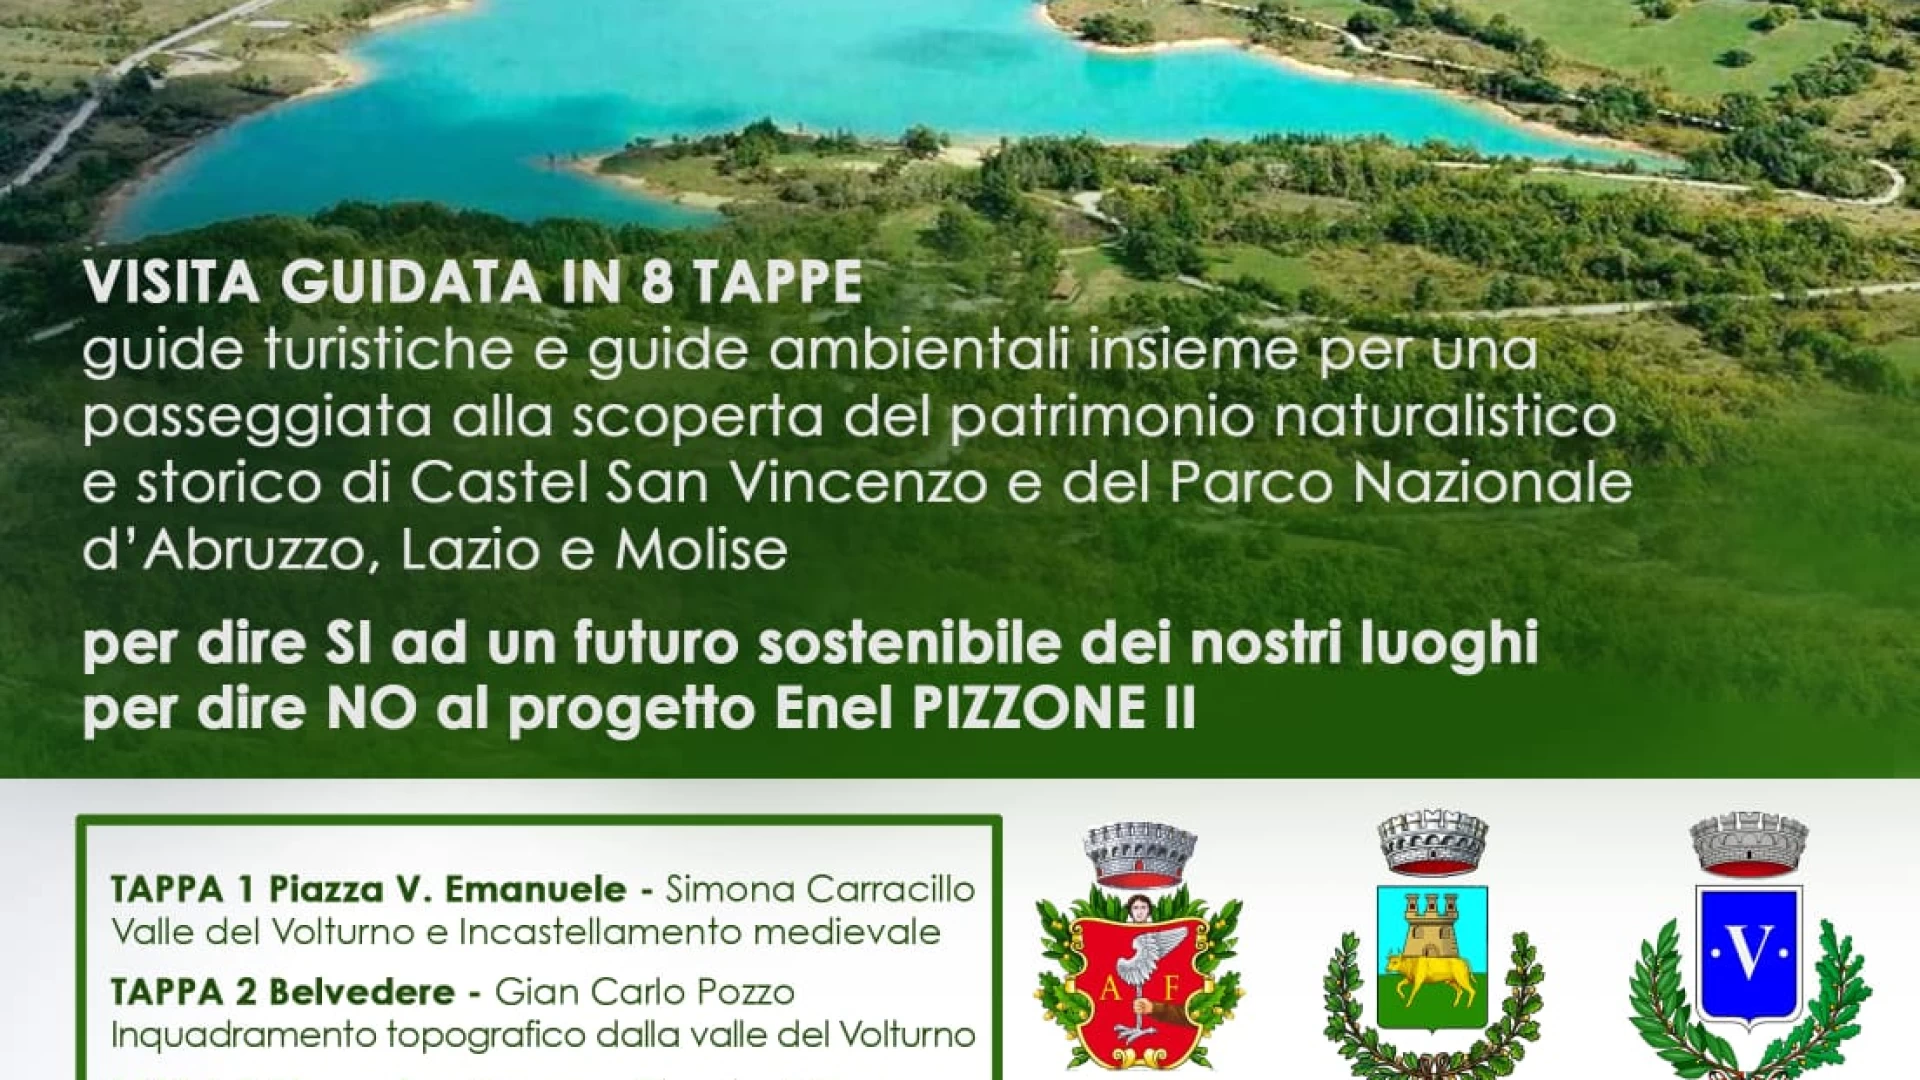 Una Staffetta culturale a Castel San Vincenzo promossa dal Coordinamento No Pizzone II. Appuntamento per mercoledì 3 gennaio.